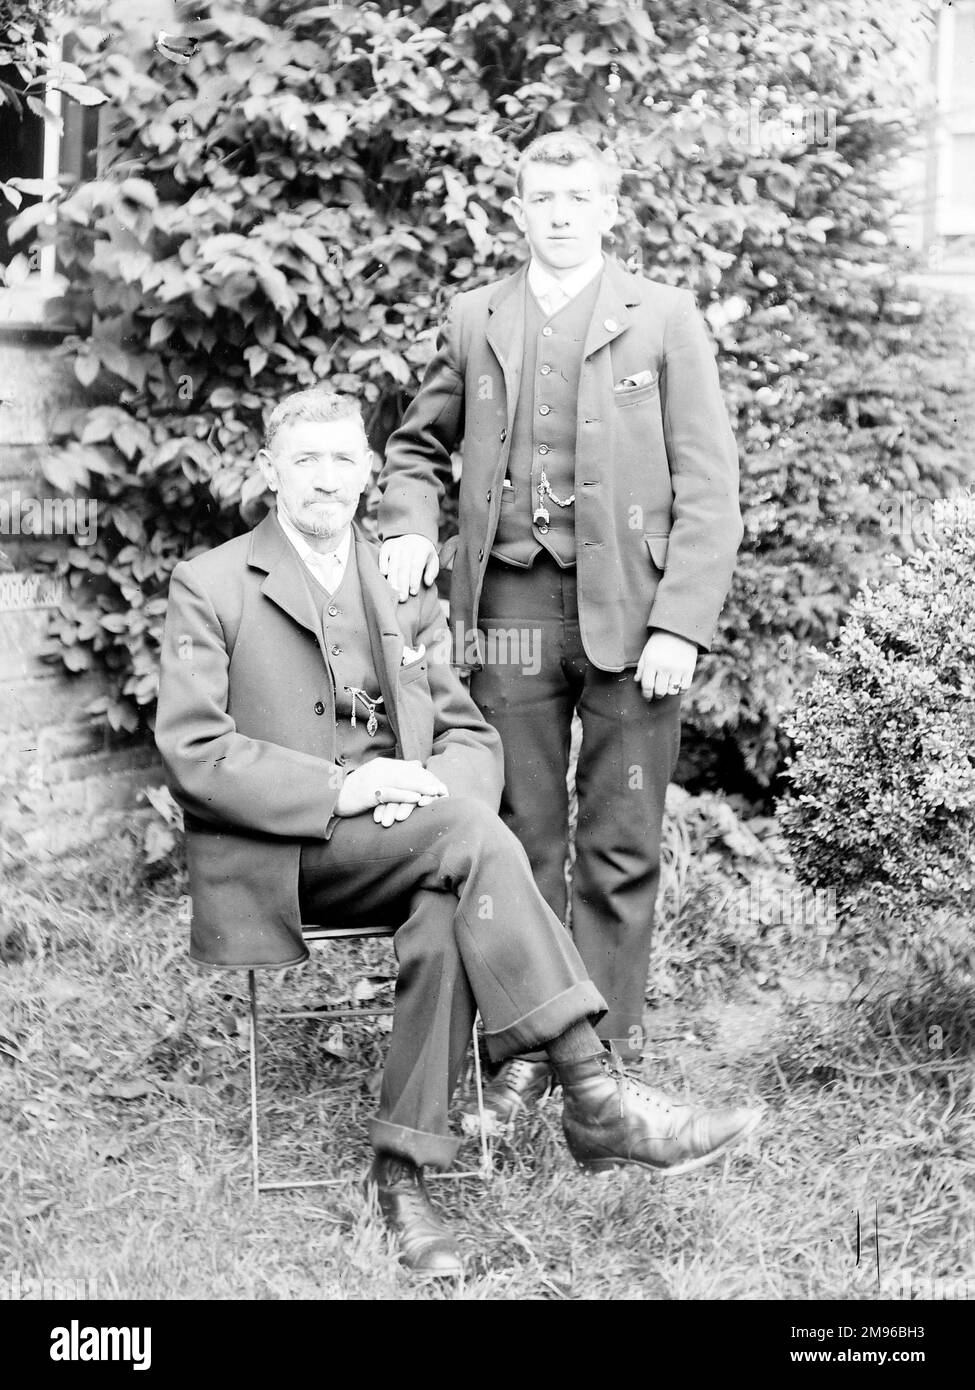 Un père et un fils posent pour leur photo dans un jardin, probablement dans la région du Mid Wales. Ils portent des combinaisons très similaires de trois pièces. Banque D'Images